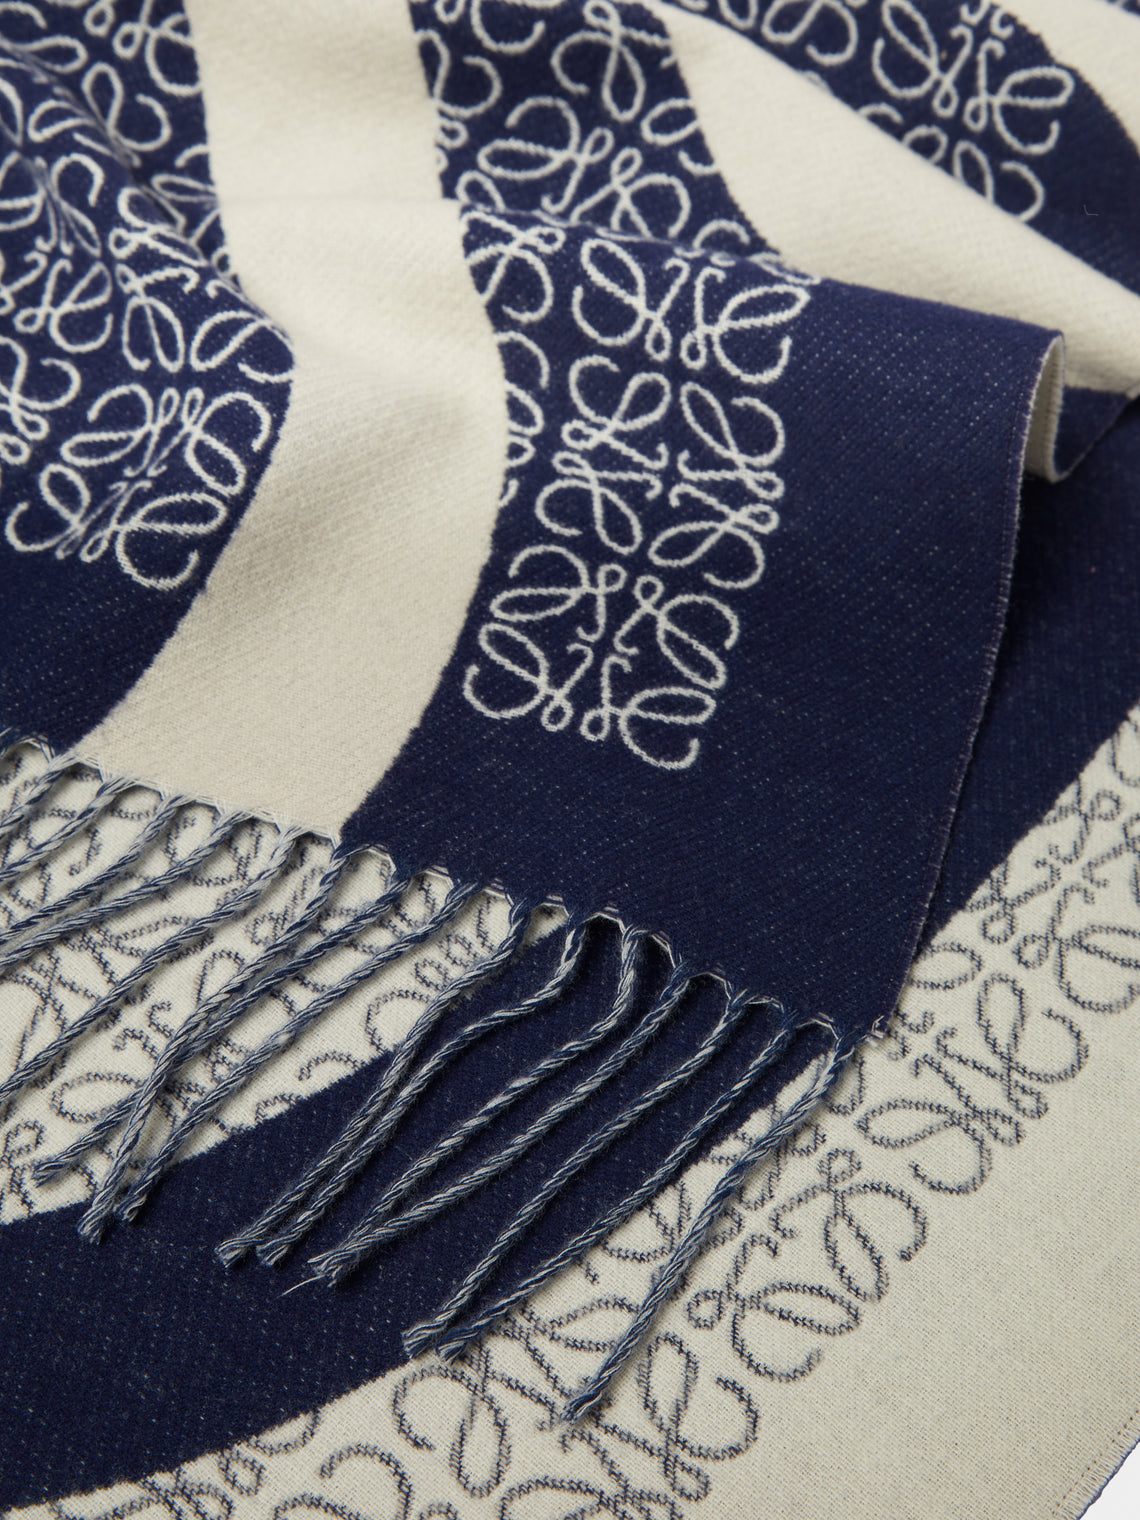 Loewe Home - Anagram Wool Blanket - Blue - ABASK